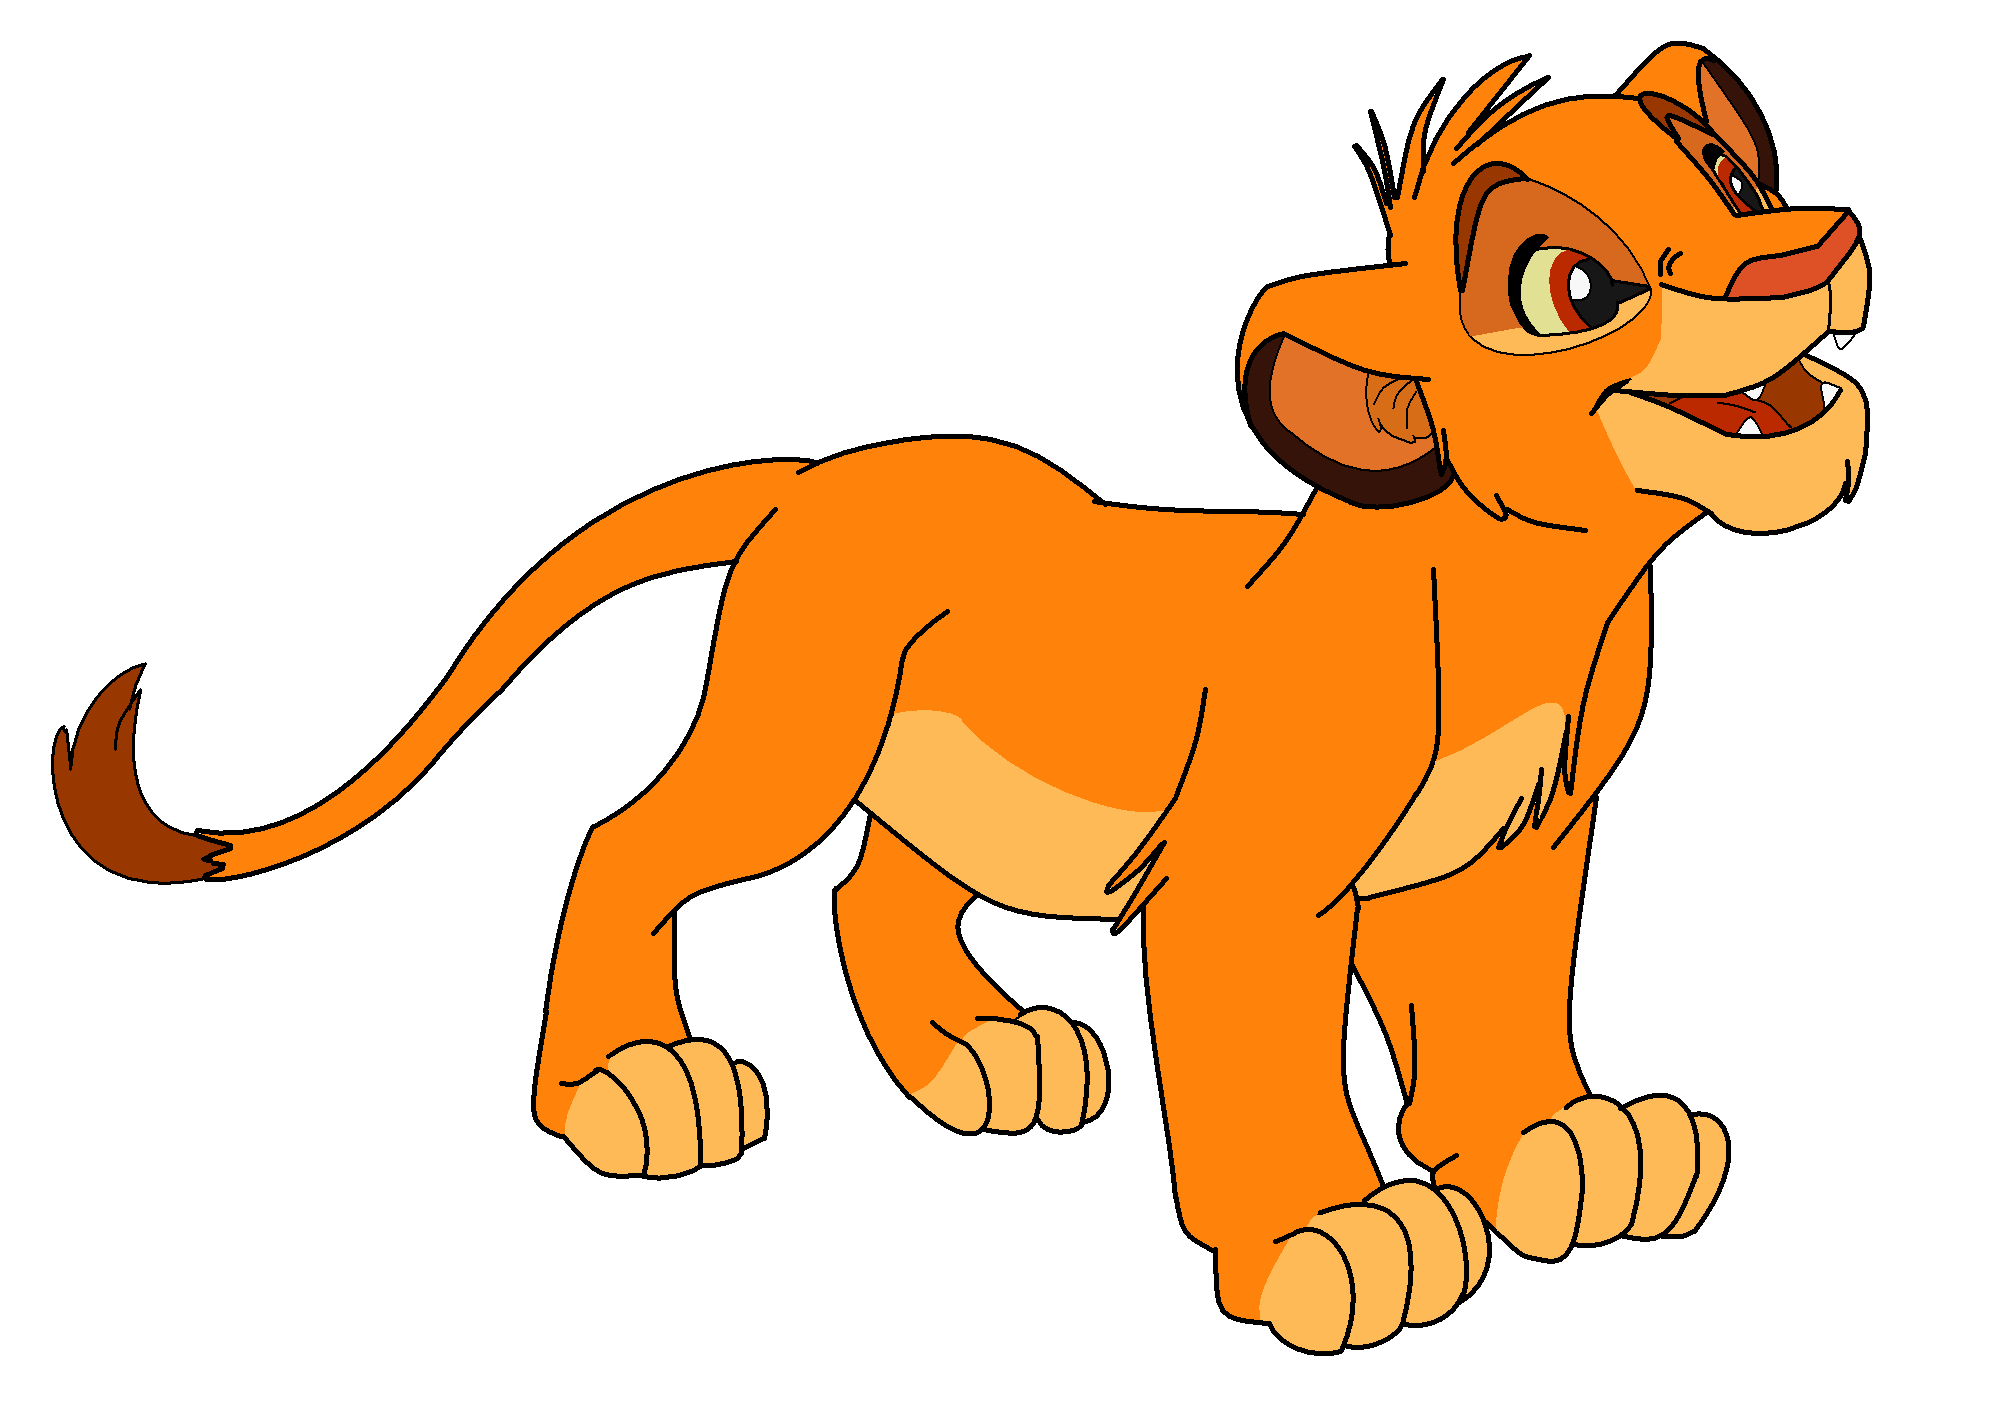 Lion Cub Blake by Blakem15192